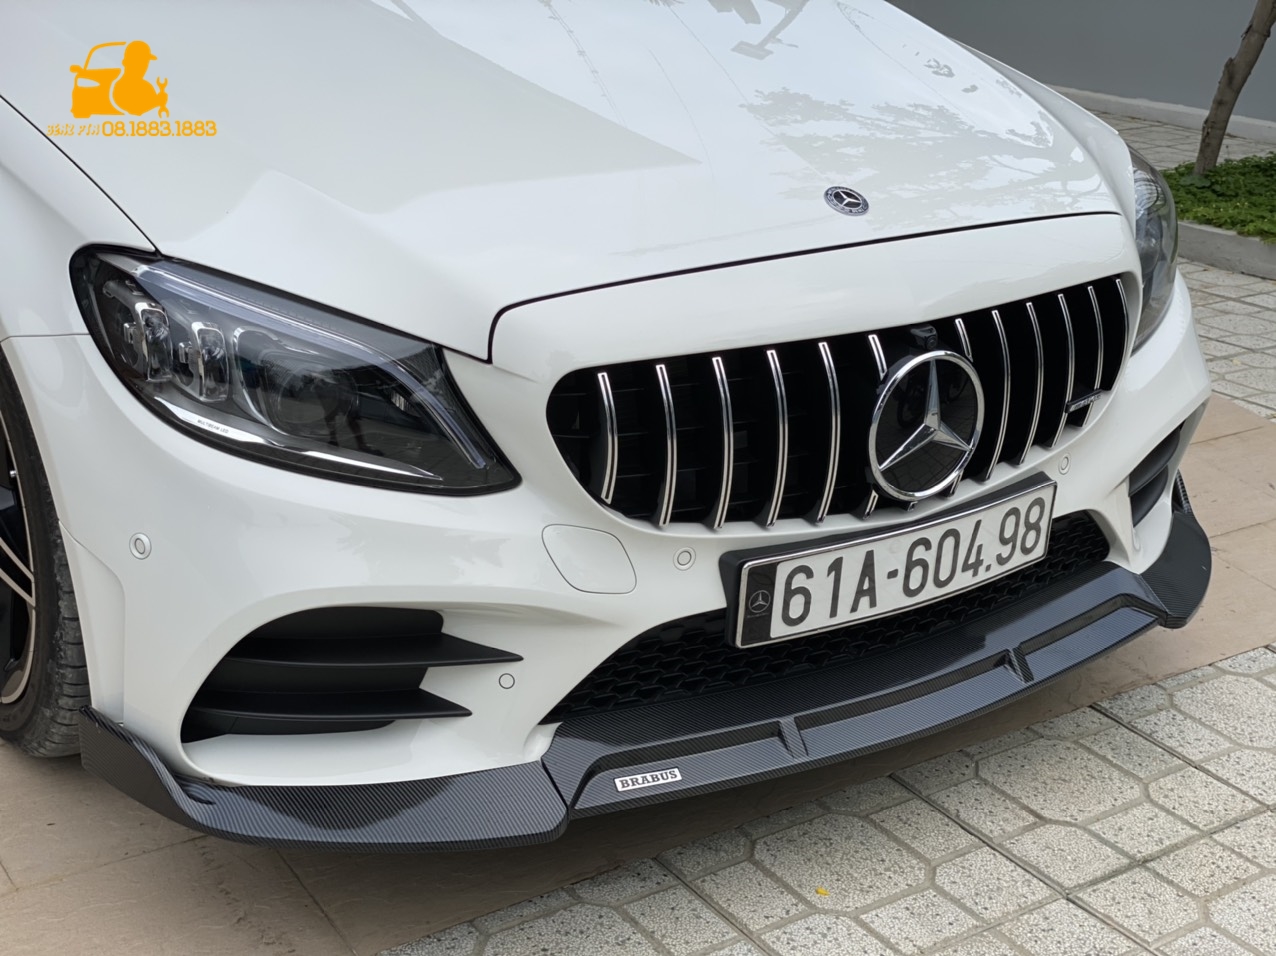 Phụ kiện xe sang Mercedes Benz chuyên cung cấp và lắp đặt mặt calang chuyên nghiệp